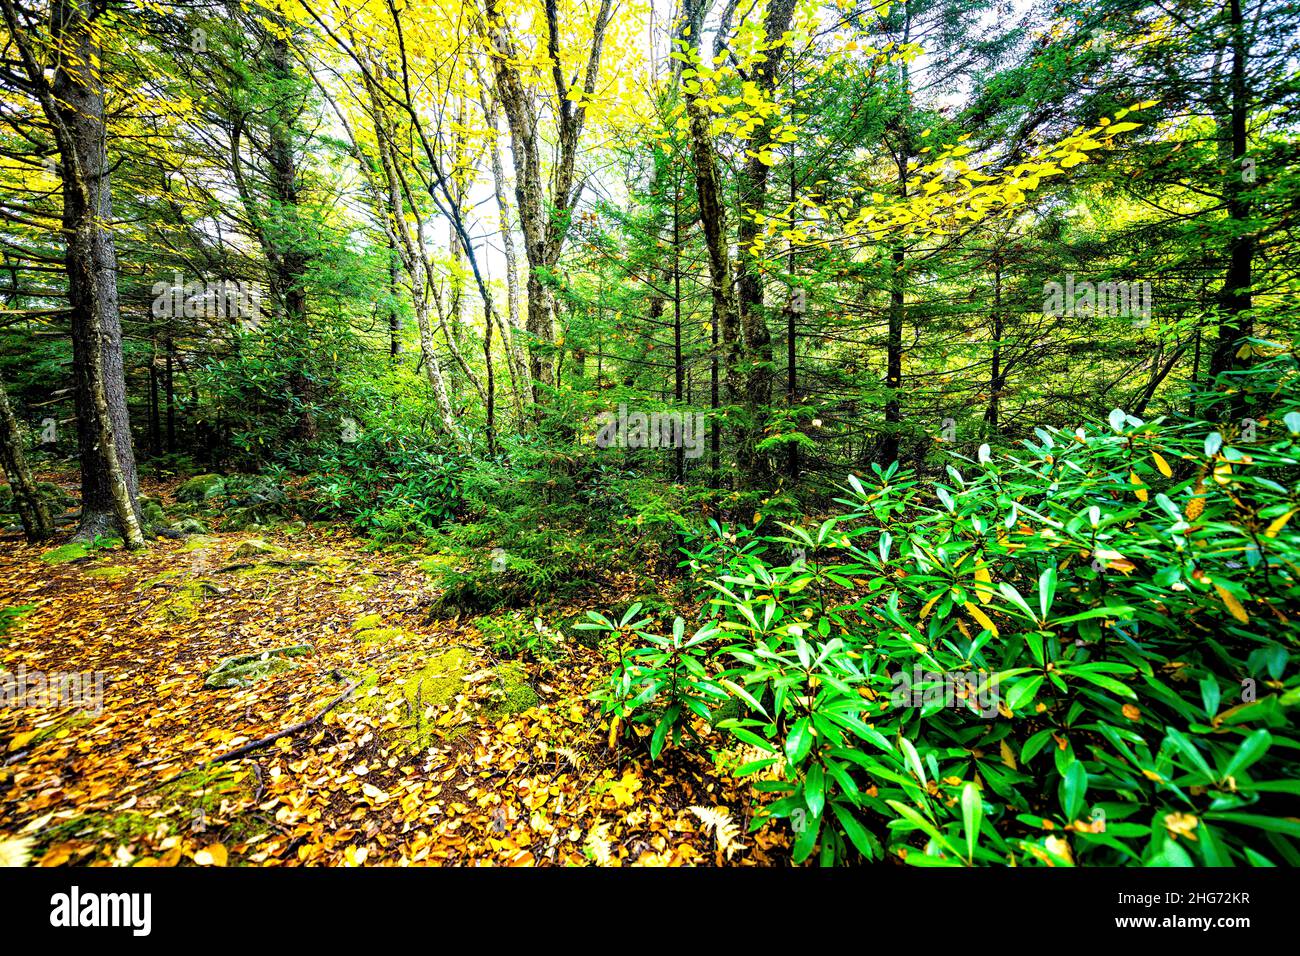 Sentiero escursionistico Dolly sods deserto, West Virginia con pino abete bosco foresta alberi in autunno autunno fogliame stagione con caduto giallo oro e verde Foto Stock